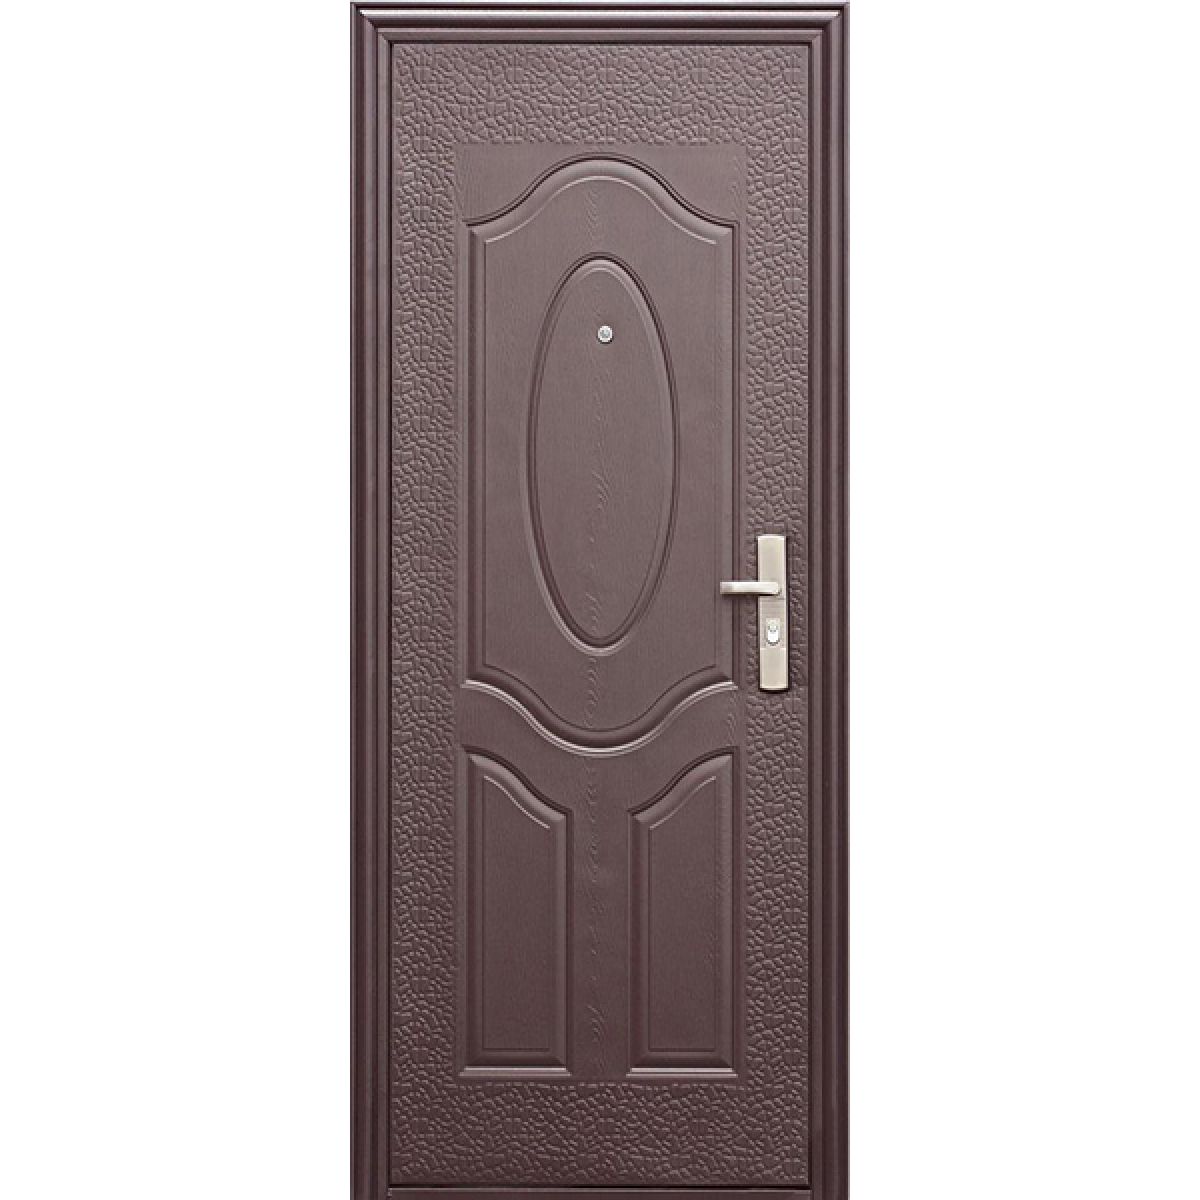 Дешевые железные двери. Дверь мет.е40м(960)l(бронза). Дверь мет. E40m (860l) ФВ. Дверь металлическая е40m(860l). Дверь мет. Е40м(960r) ФВ.